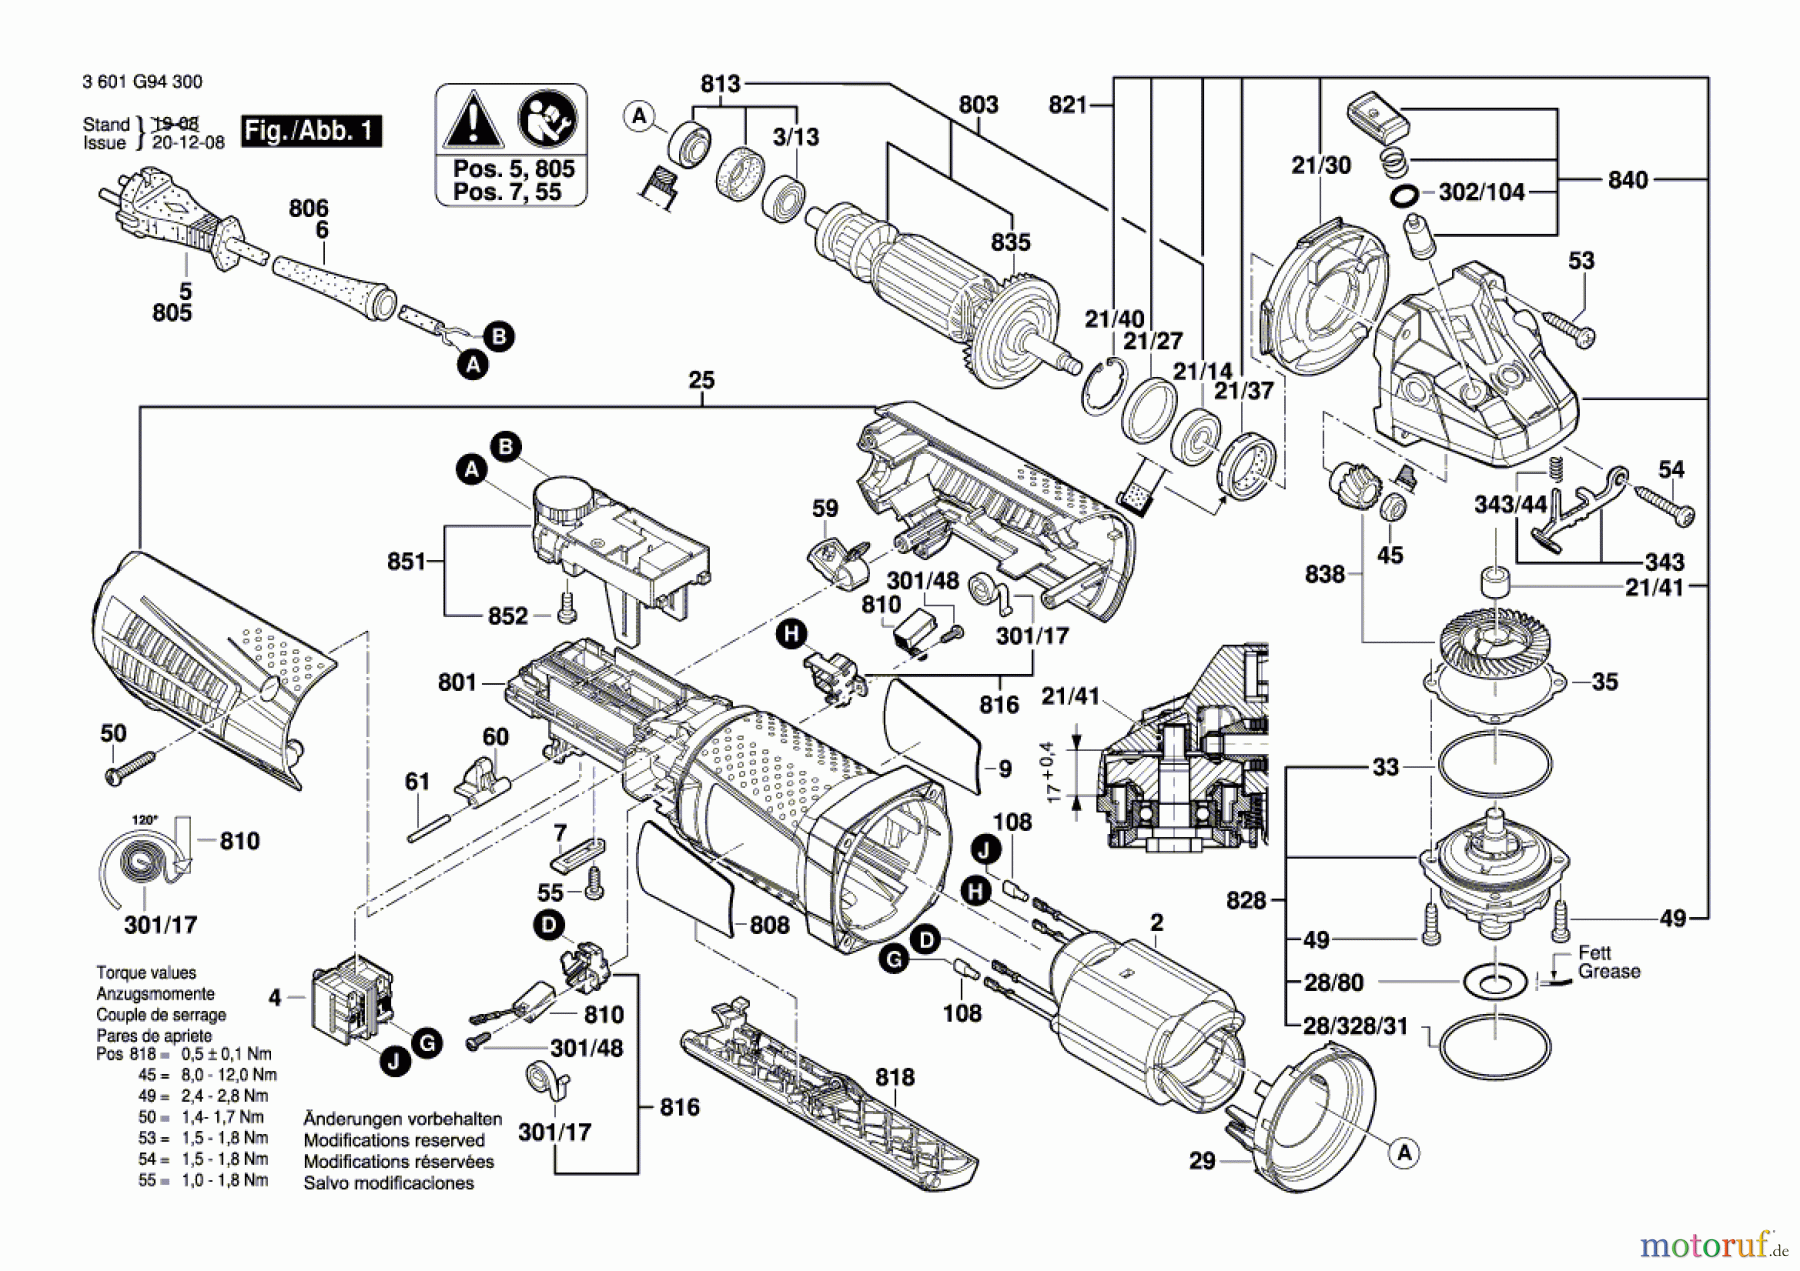  Bosch Werkzeug Winkelschleifer GWS 15-125 CIEPX Seite 1